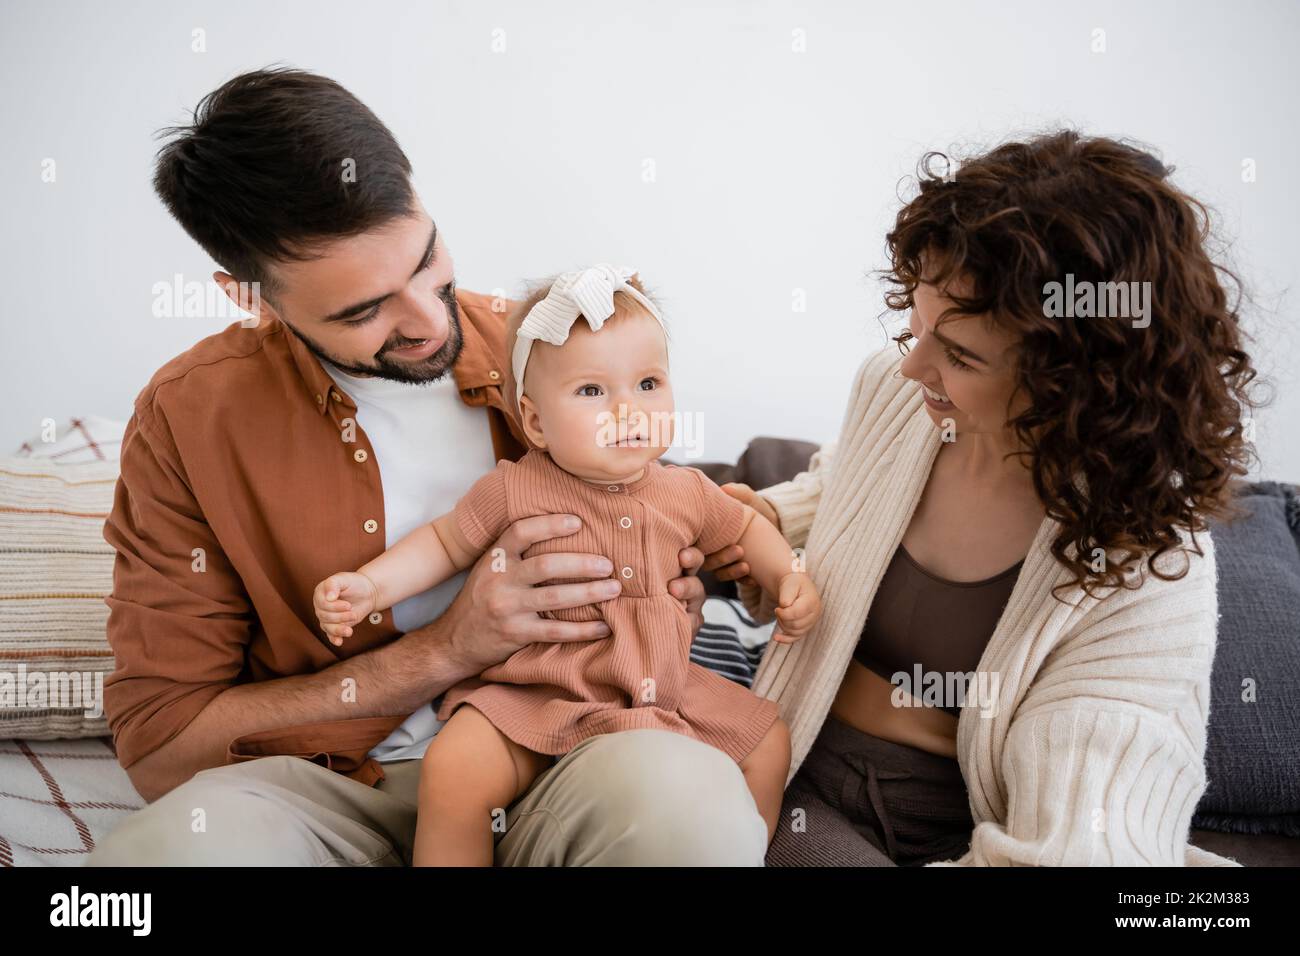 padre alegre sosteniendo feliz hija infantil cerca de la esposa rizada sentada en el sofá, imagen de archivo Foto de stock